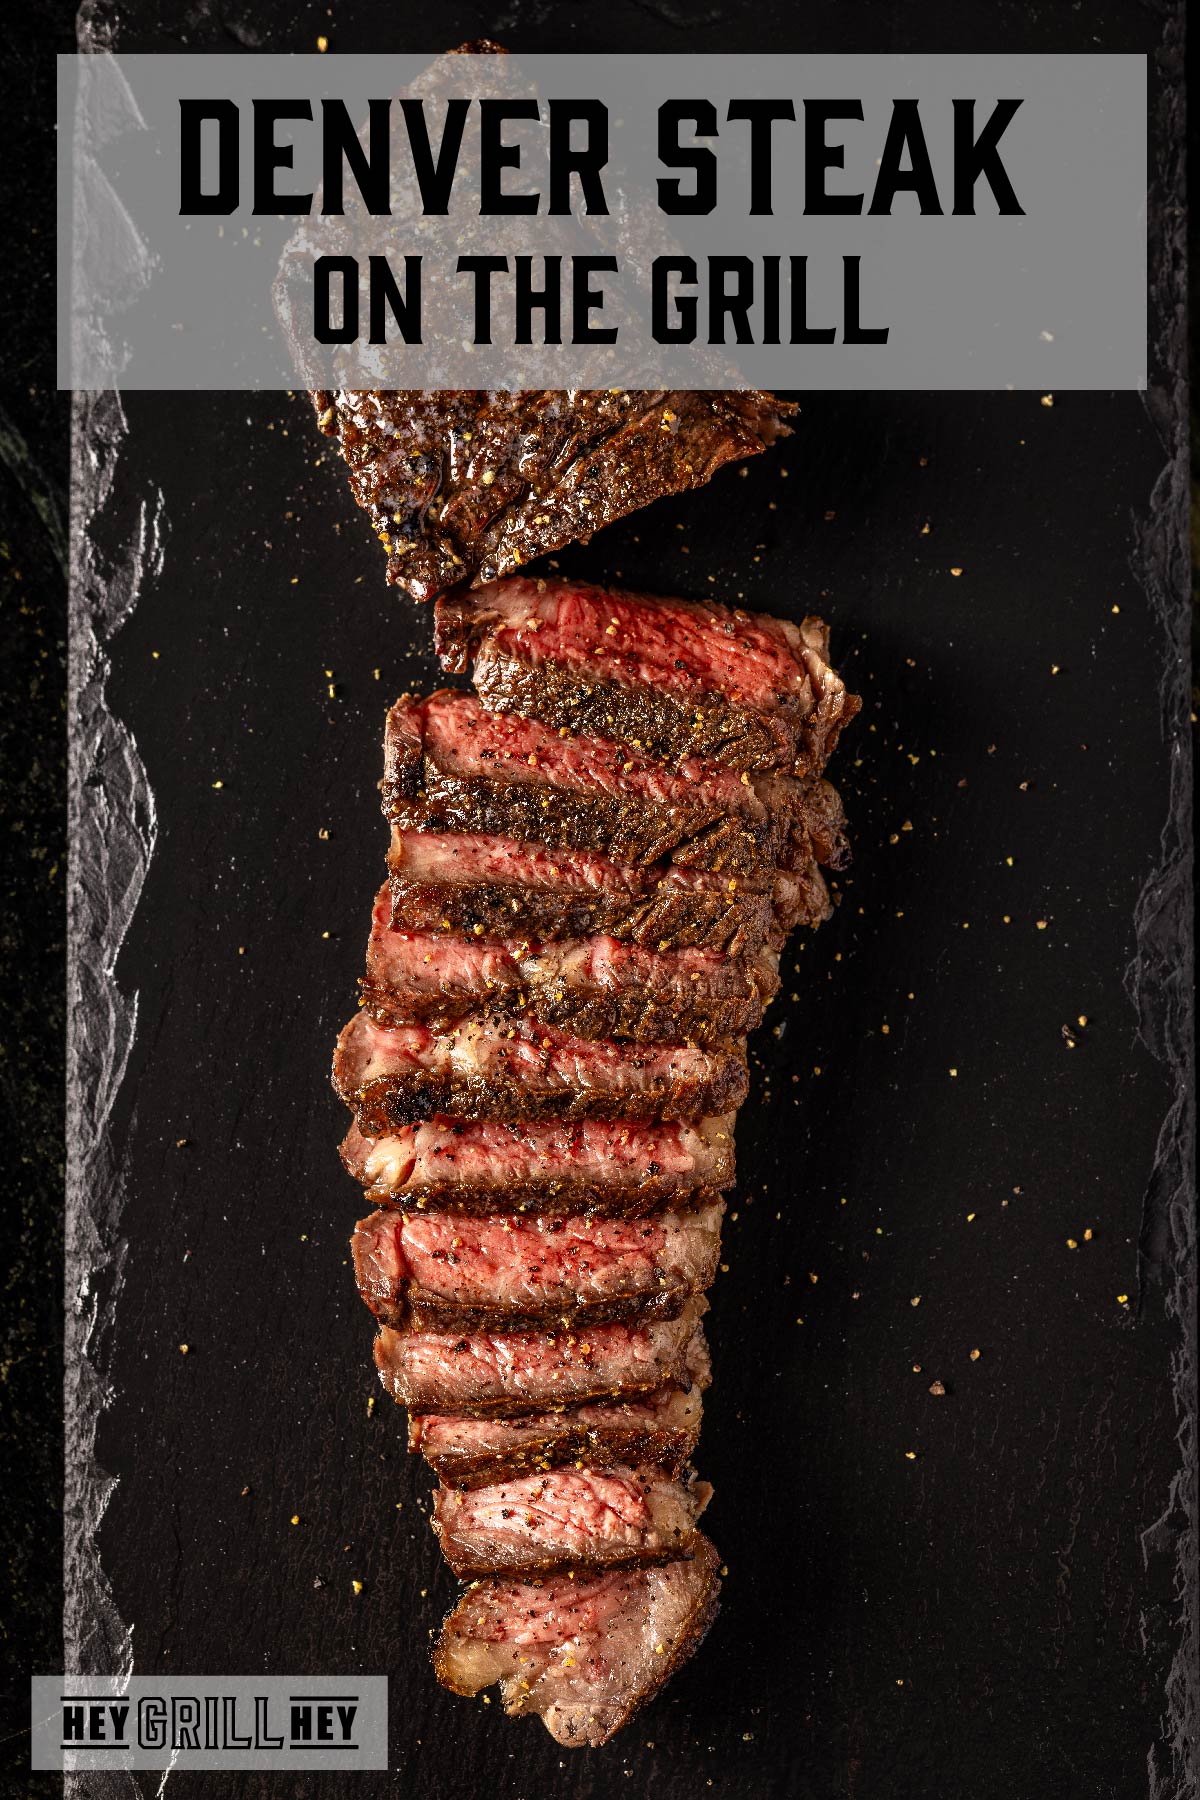 Sliced steak on black platter. Text reads "Denver Steak on the Grill".